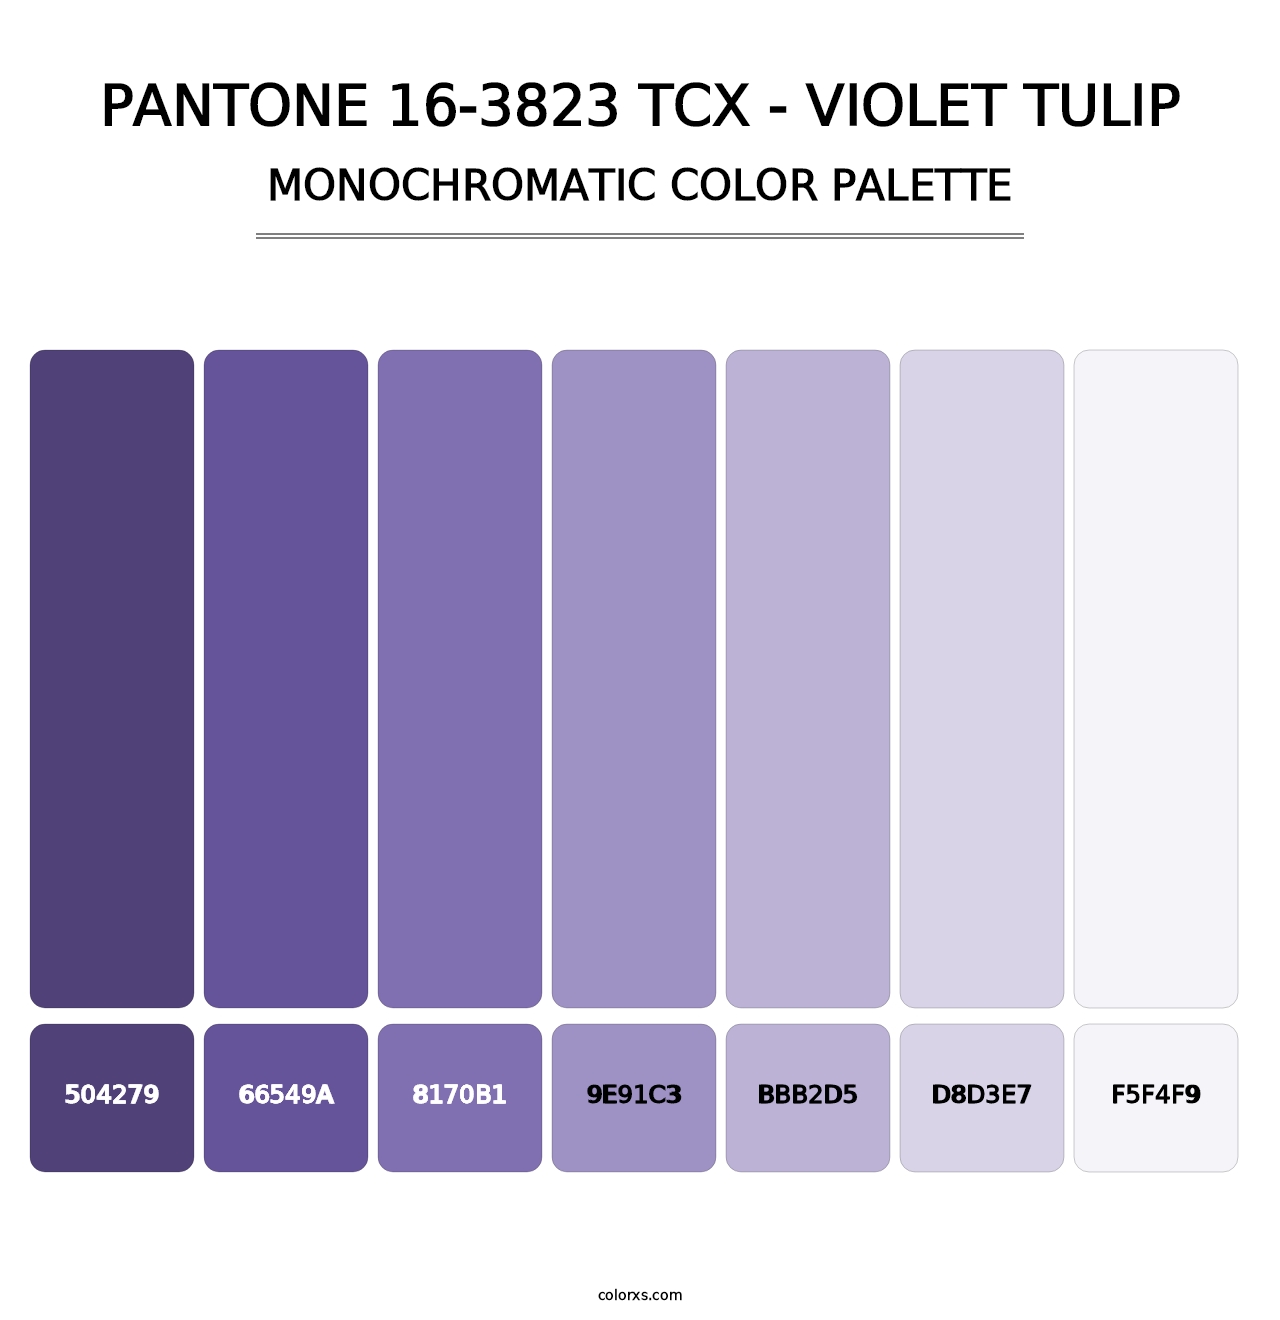 PANTONE 16-3823 TCX - Violet Tulip - Monochromatic Color Palette